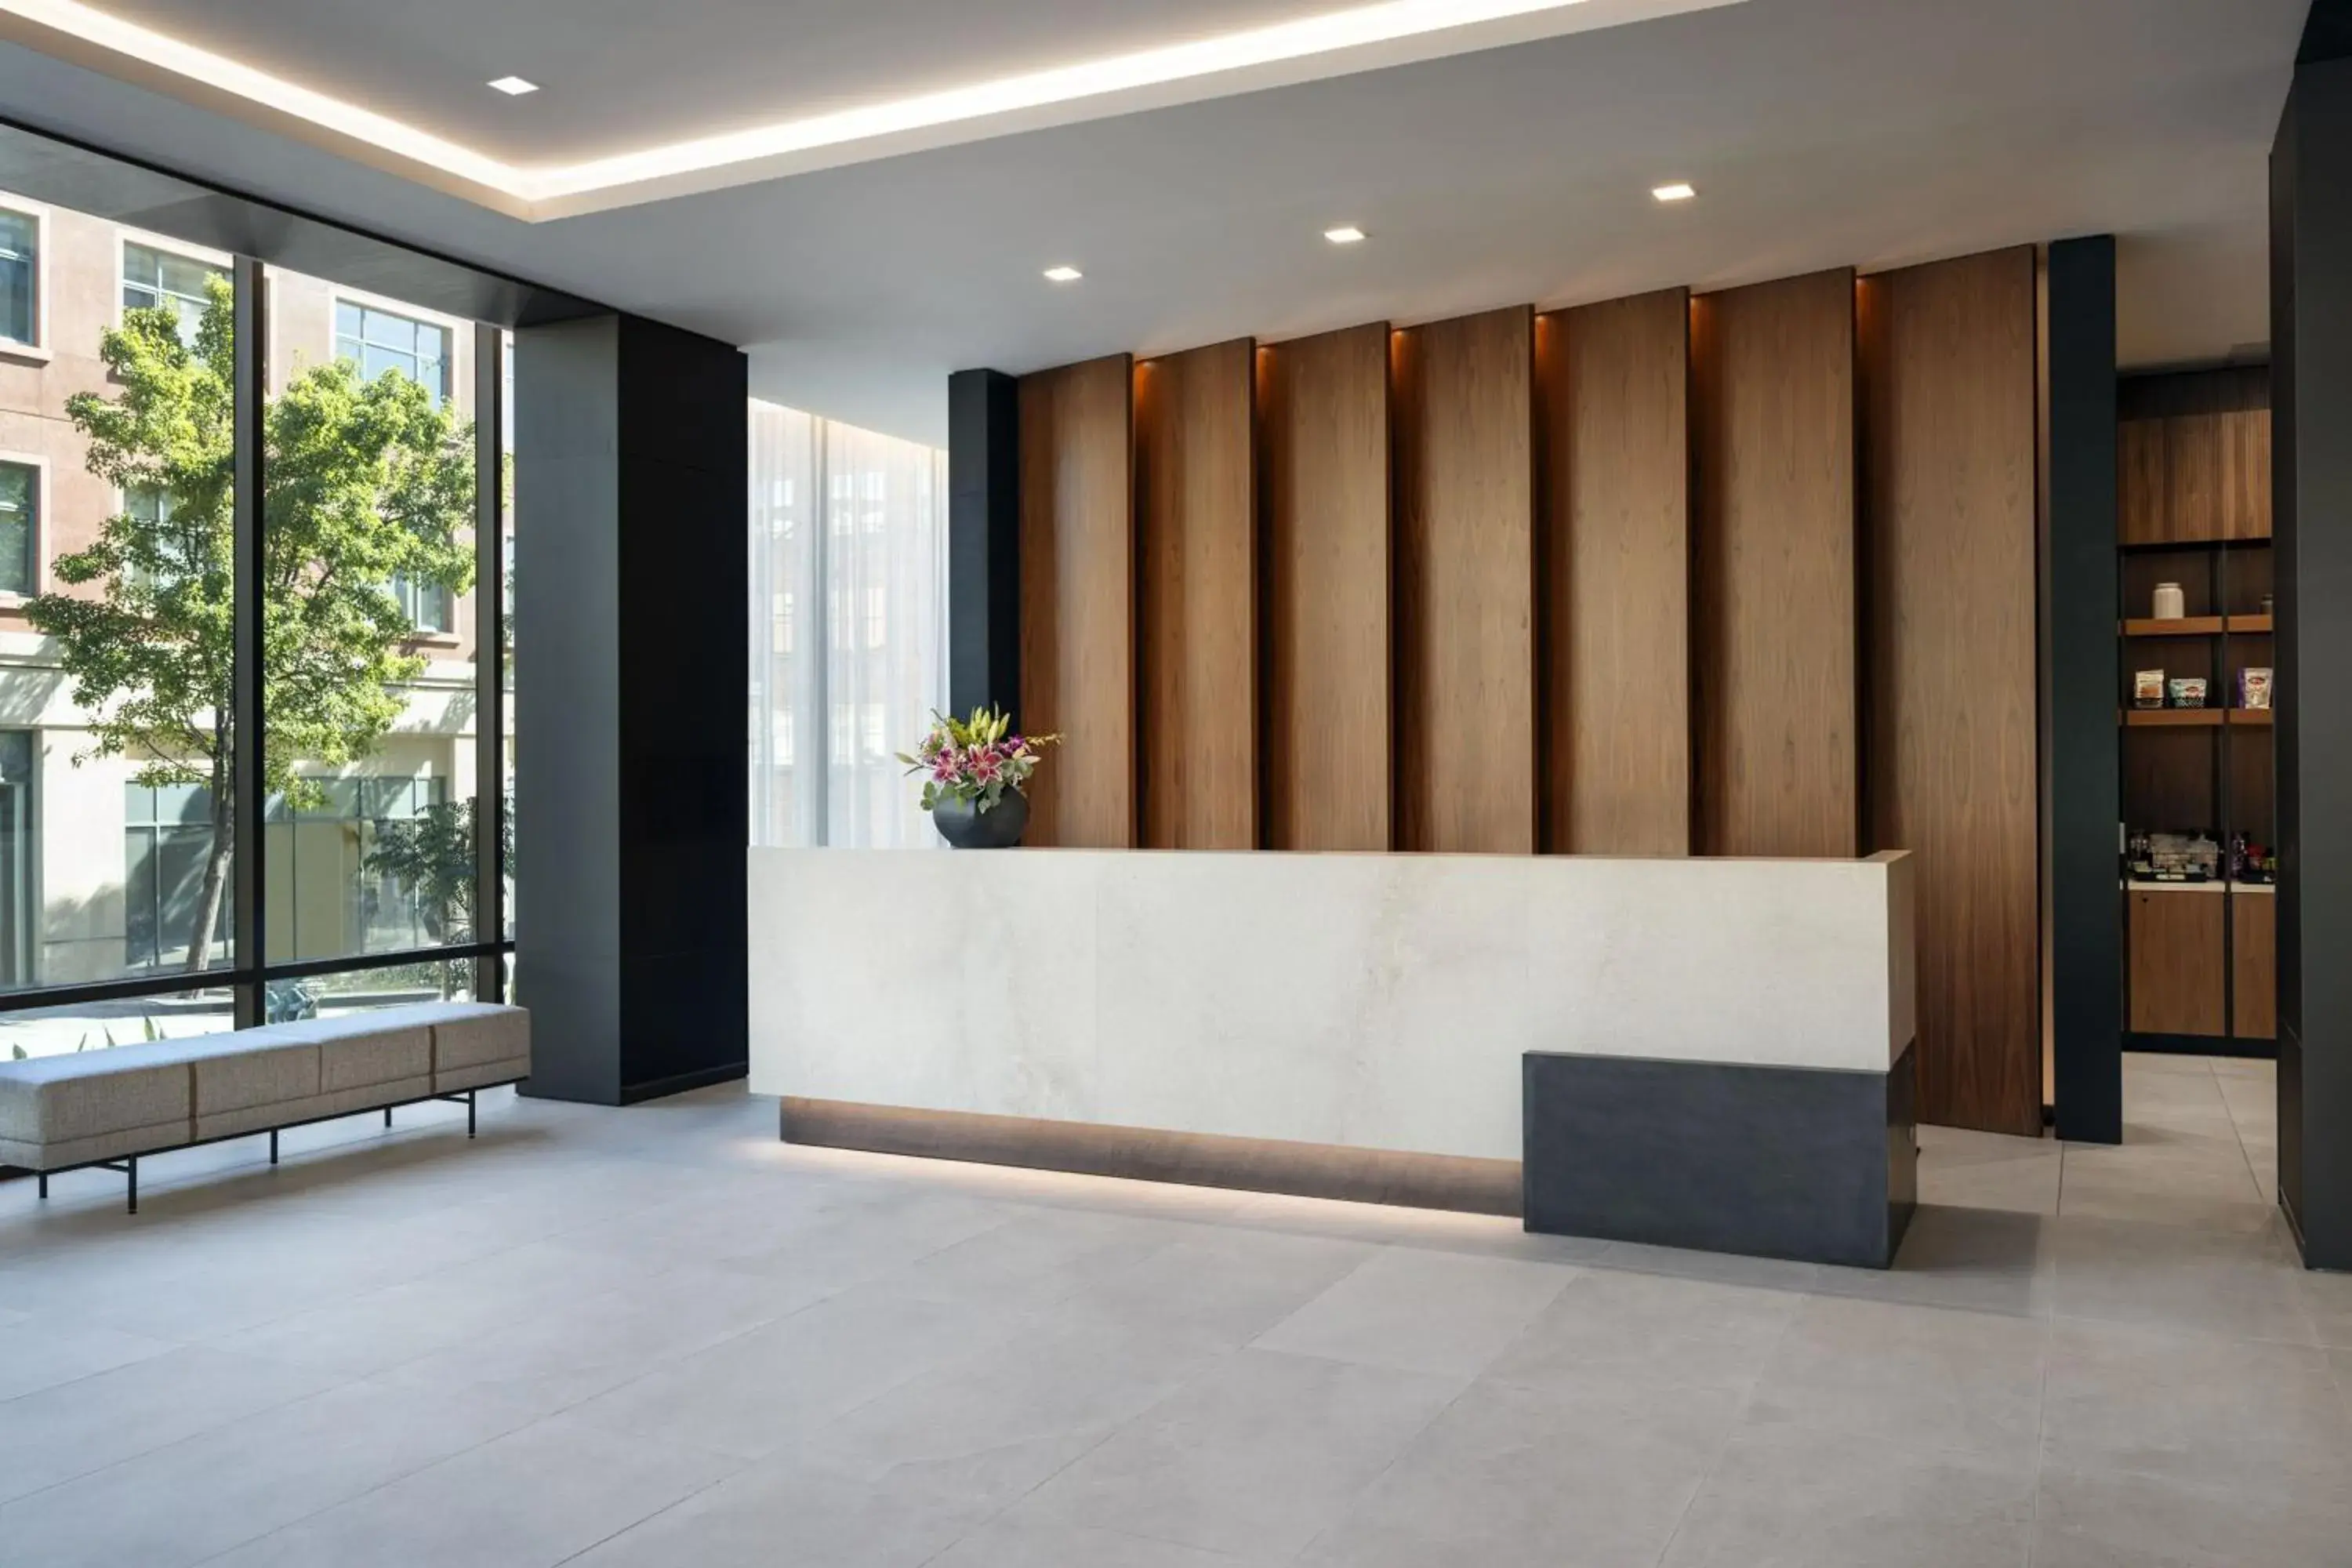 Lobby or reception, Lobby/Reception in AC Hotel by Marriott San Rafael